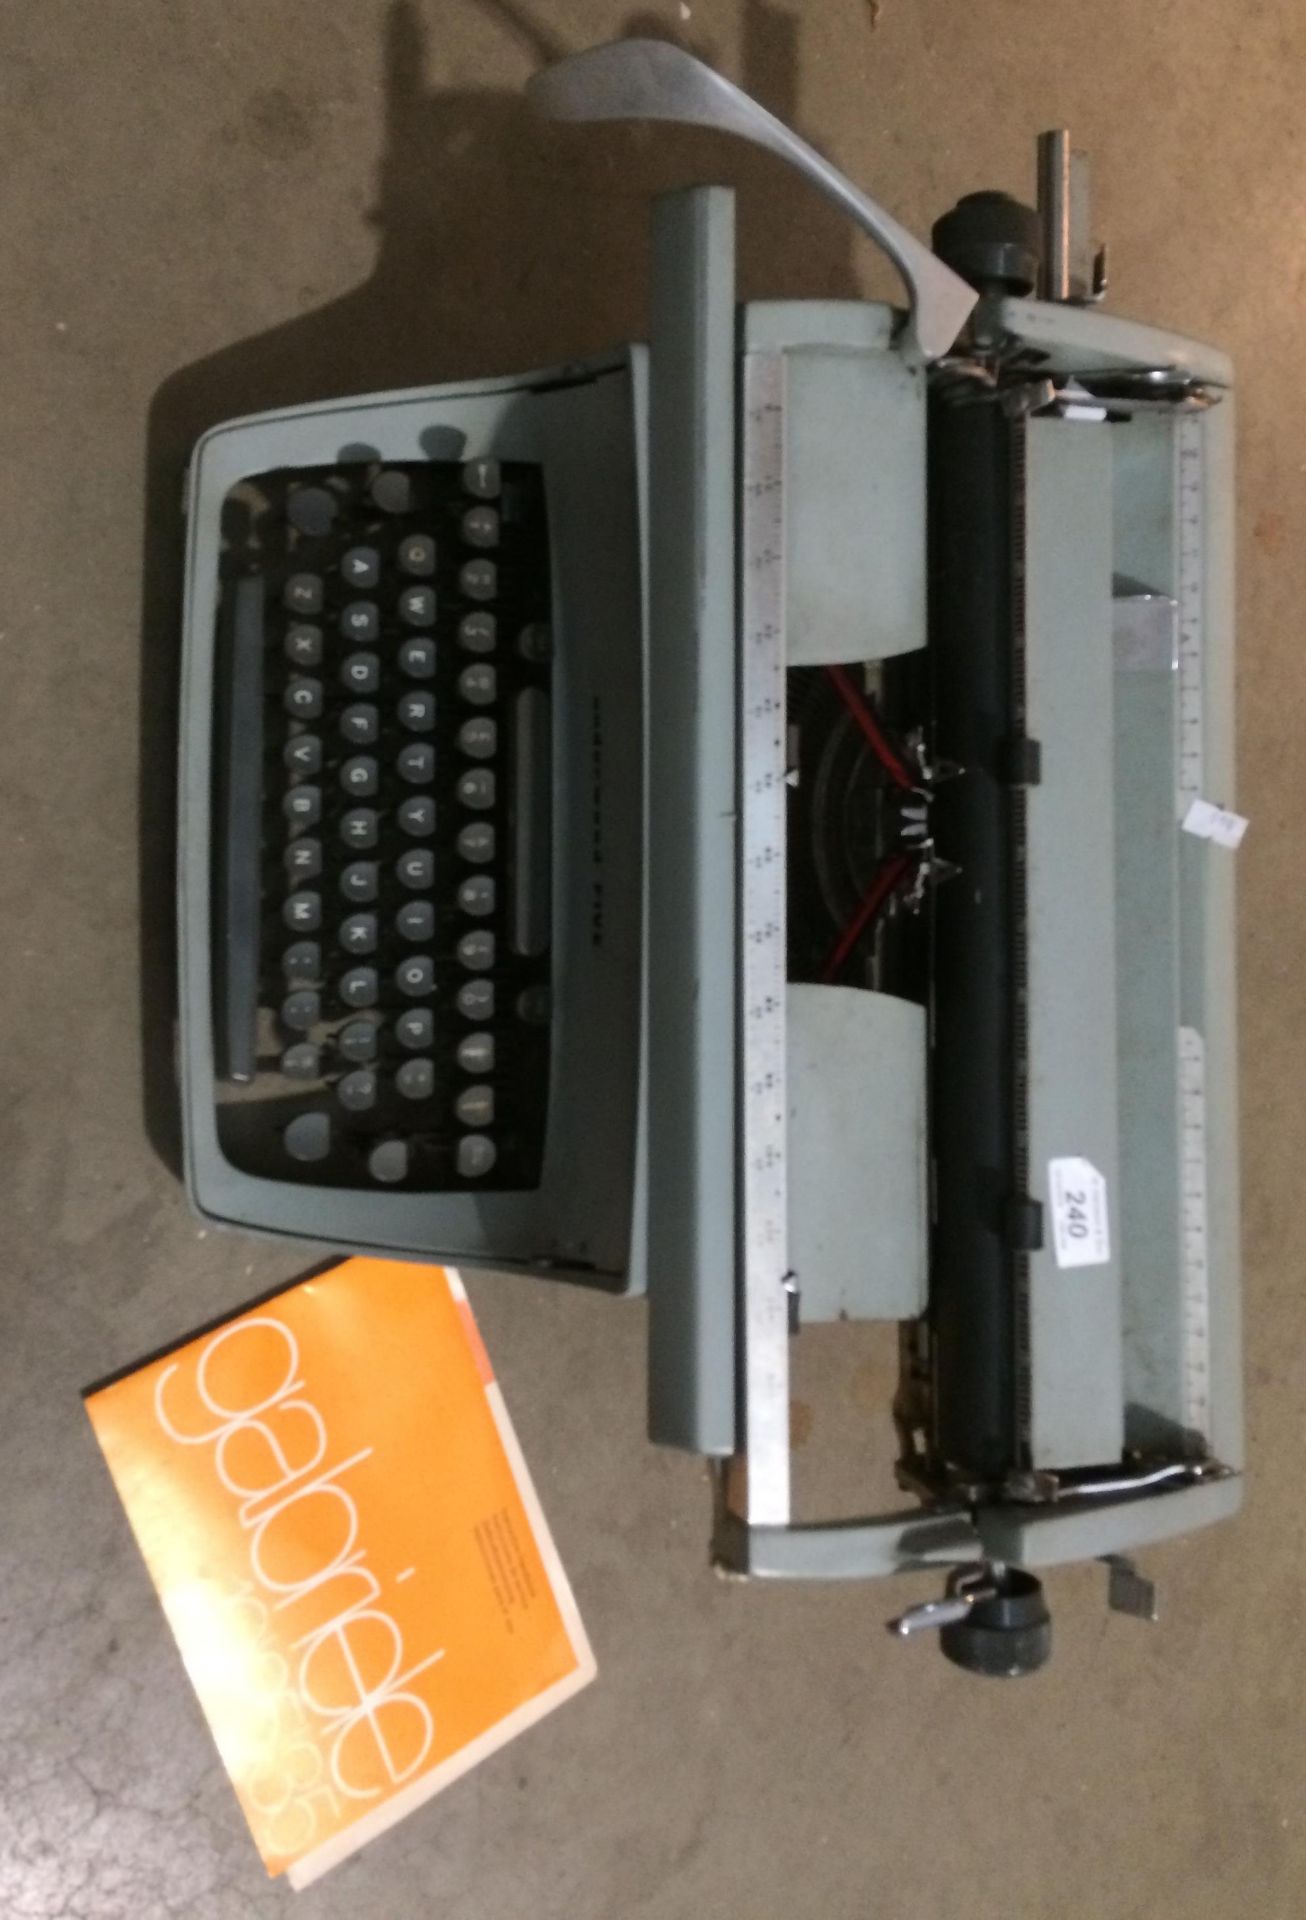 An Underwood Five typewriter